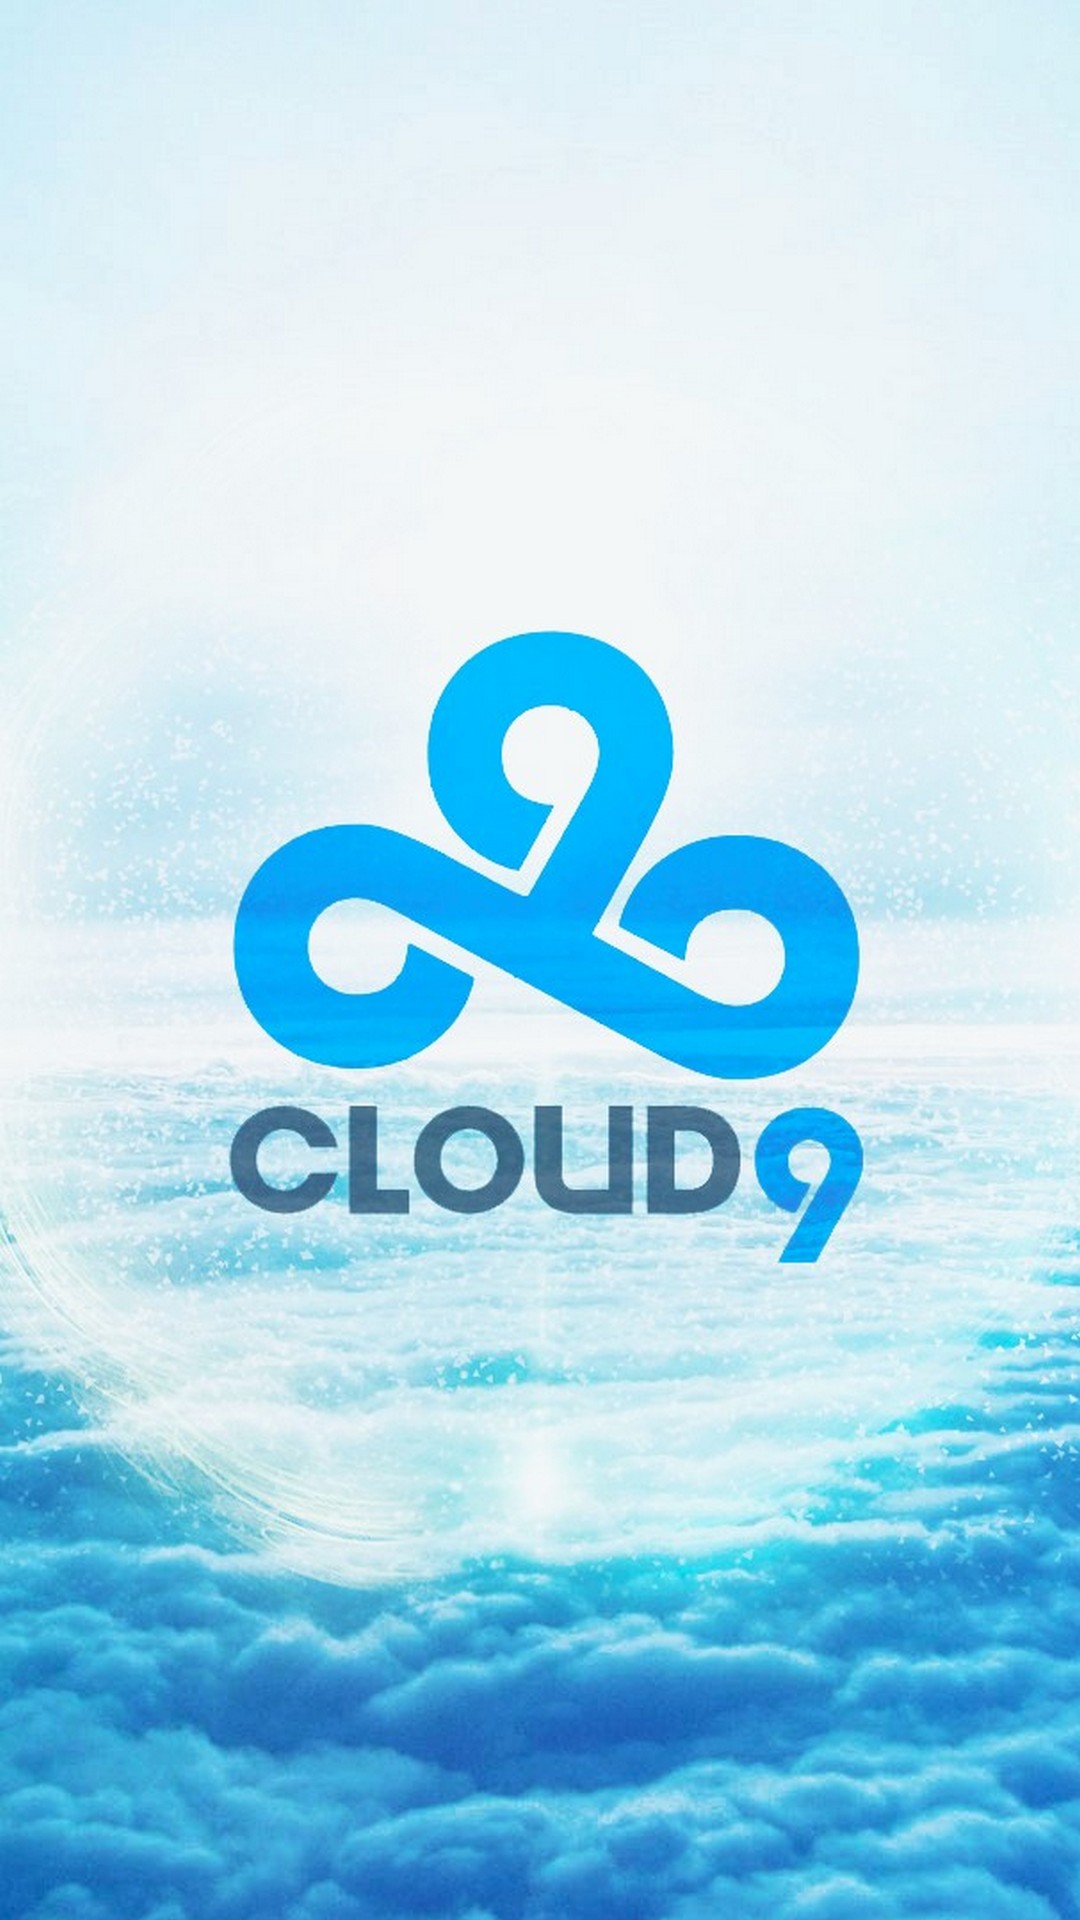 cloud 9 iphone wallpaper,sky,aqua,blue,text,water